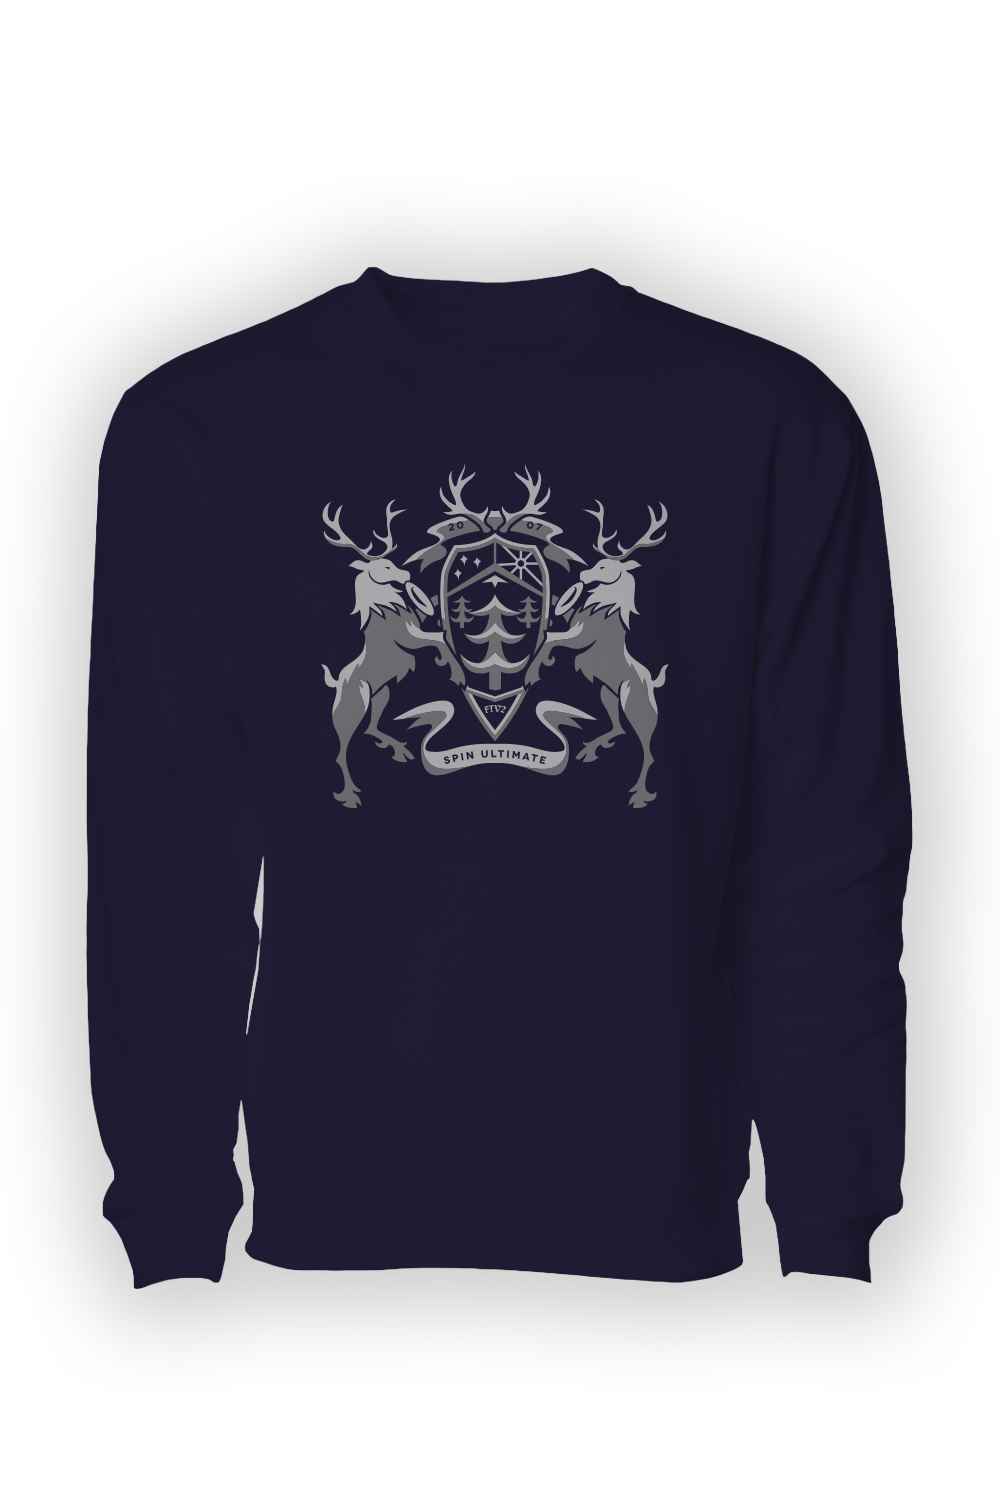 Crest Crewneck Sweatshirt (Navy)